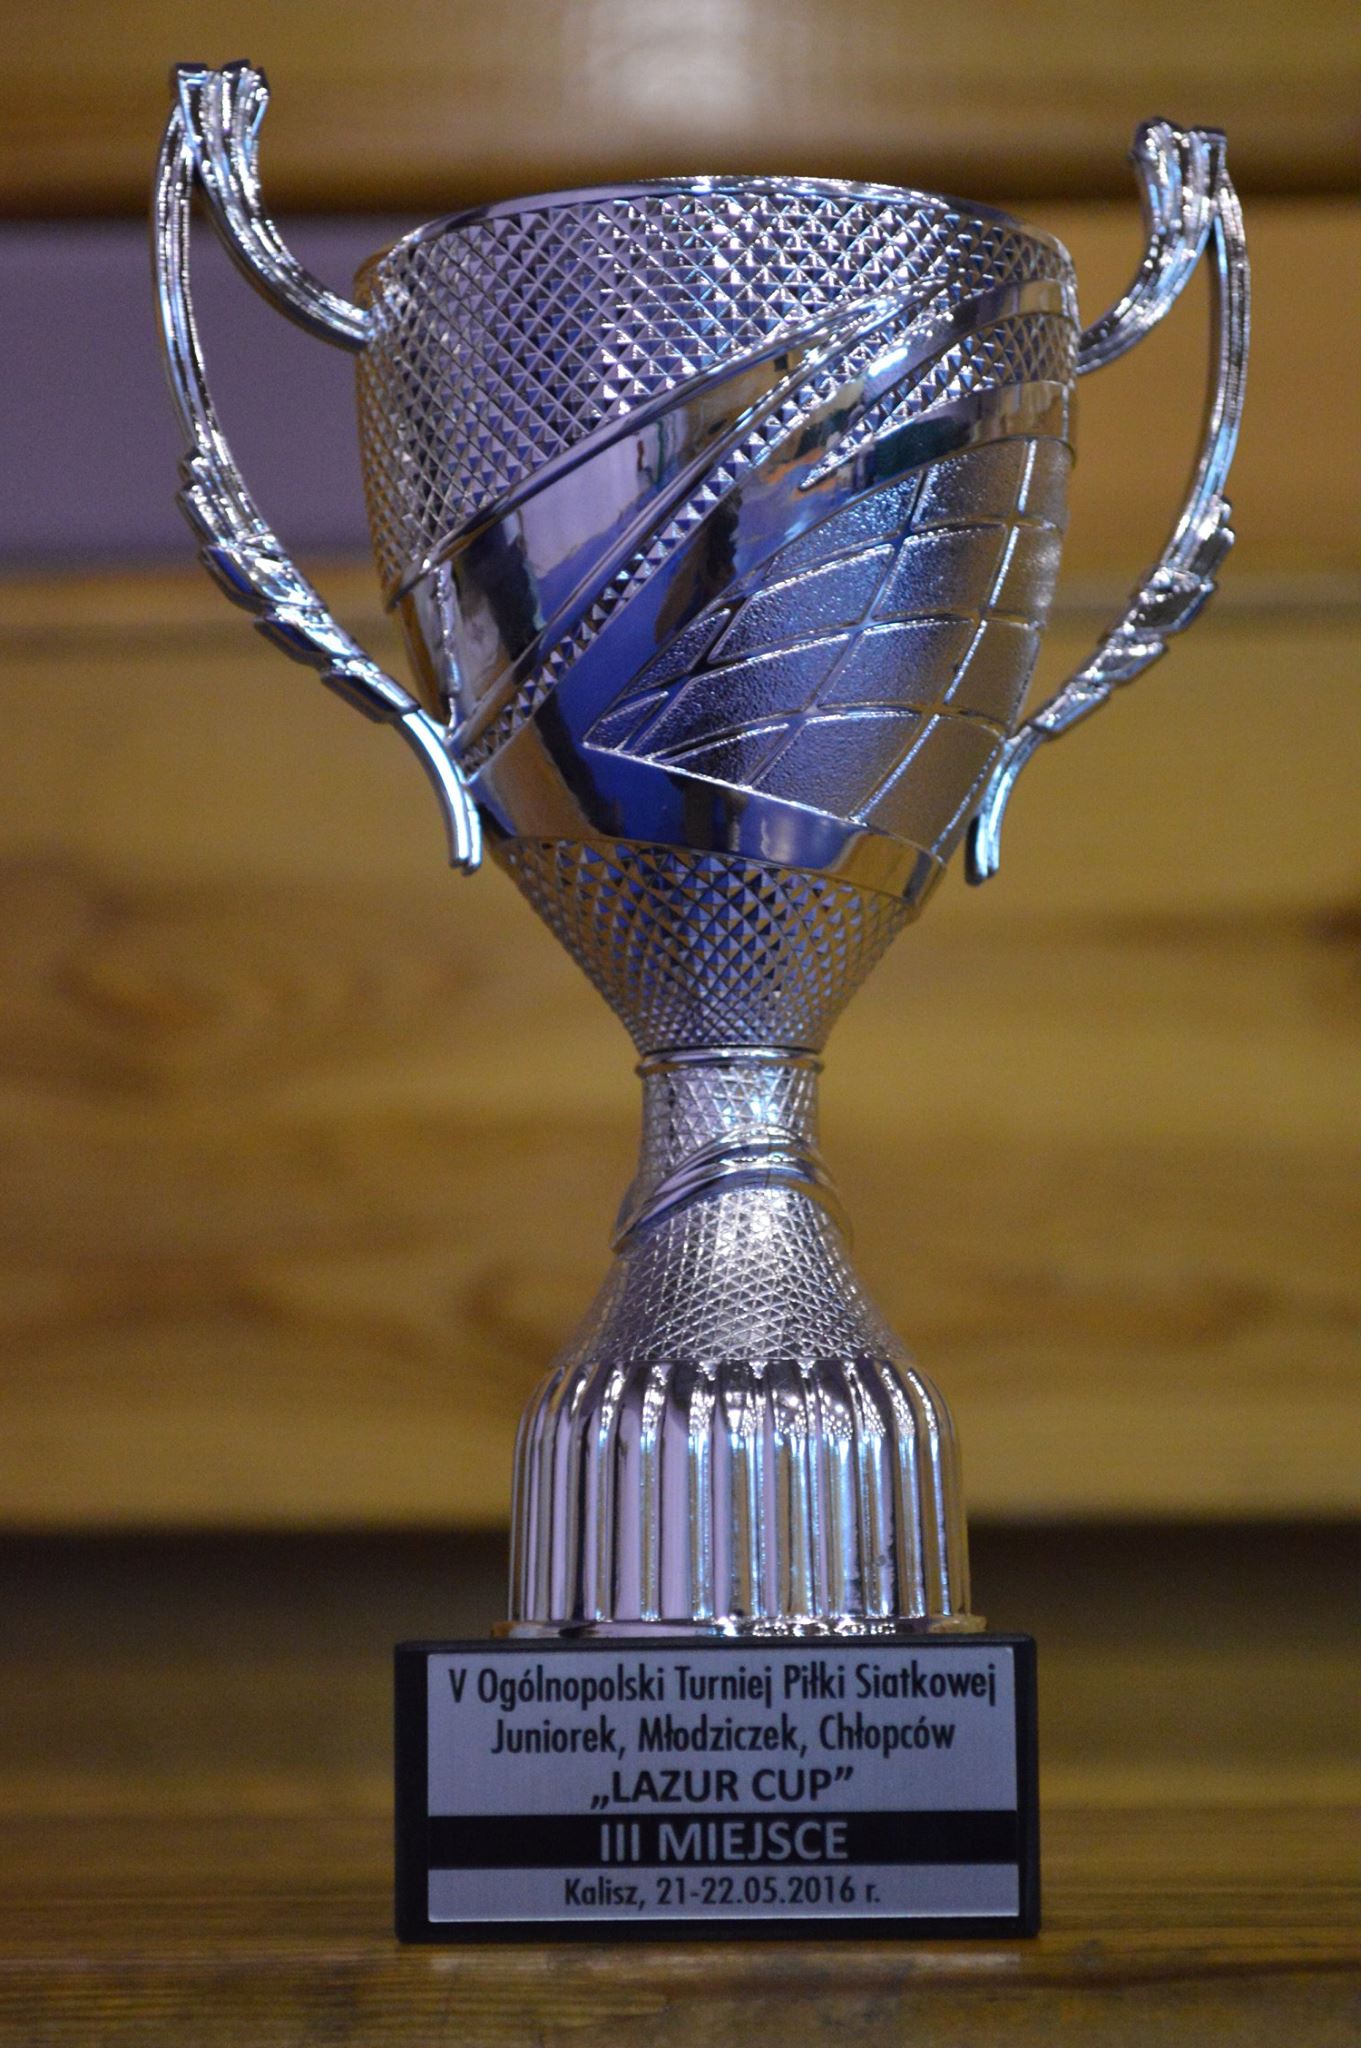 III miejsce juniorów Bzury w turnieju Lazur Cup w Kaliszu